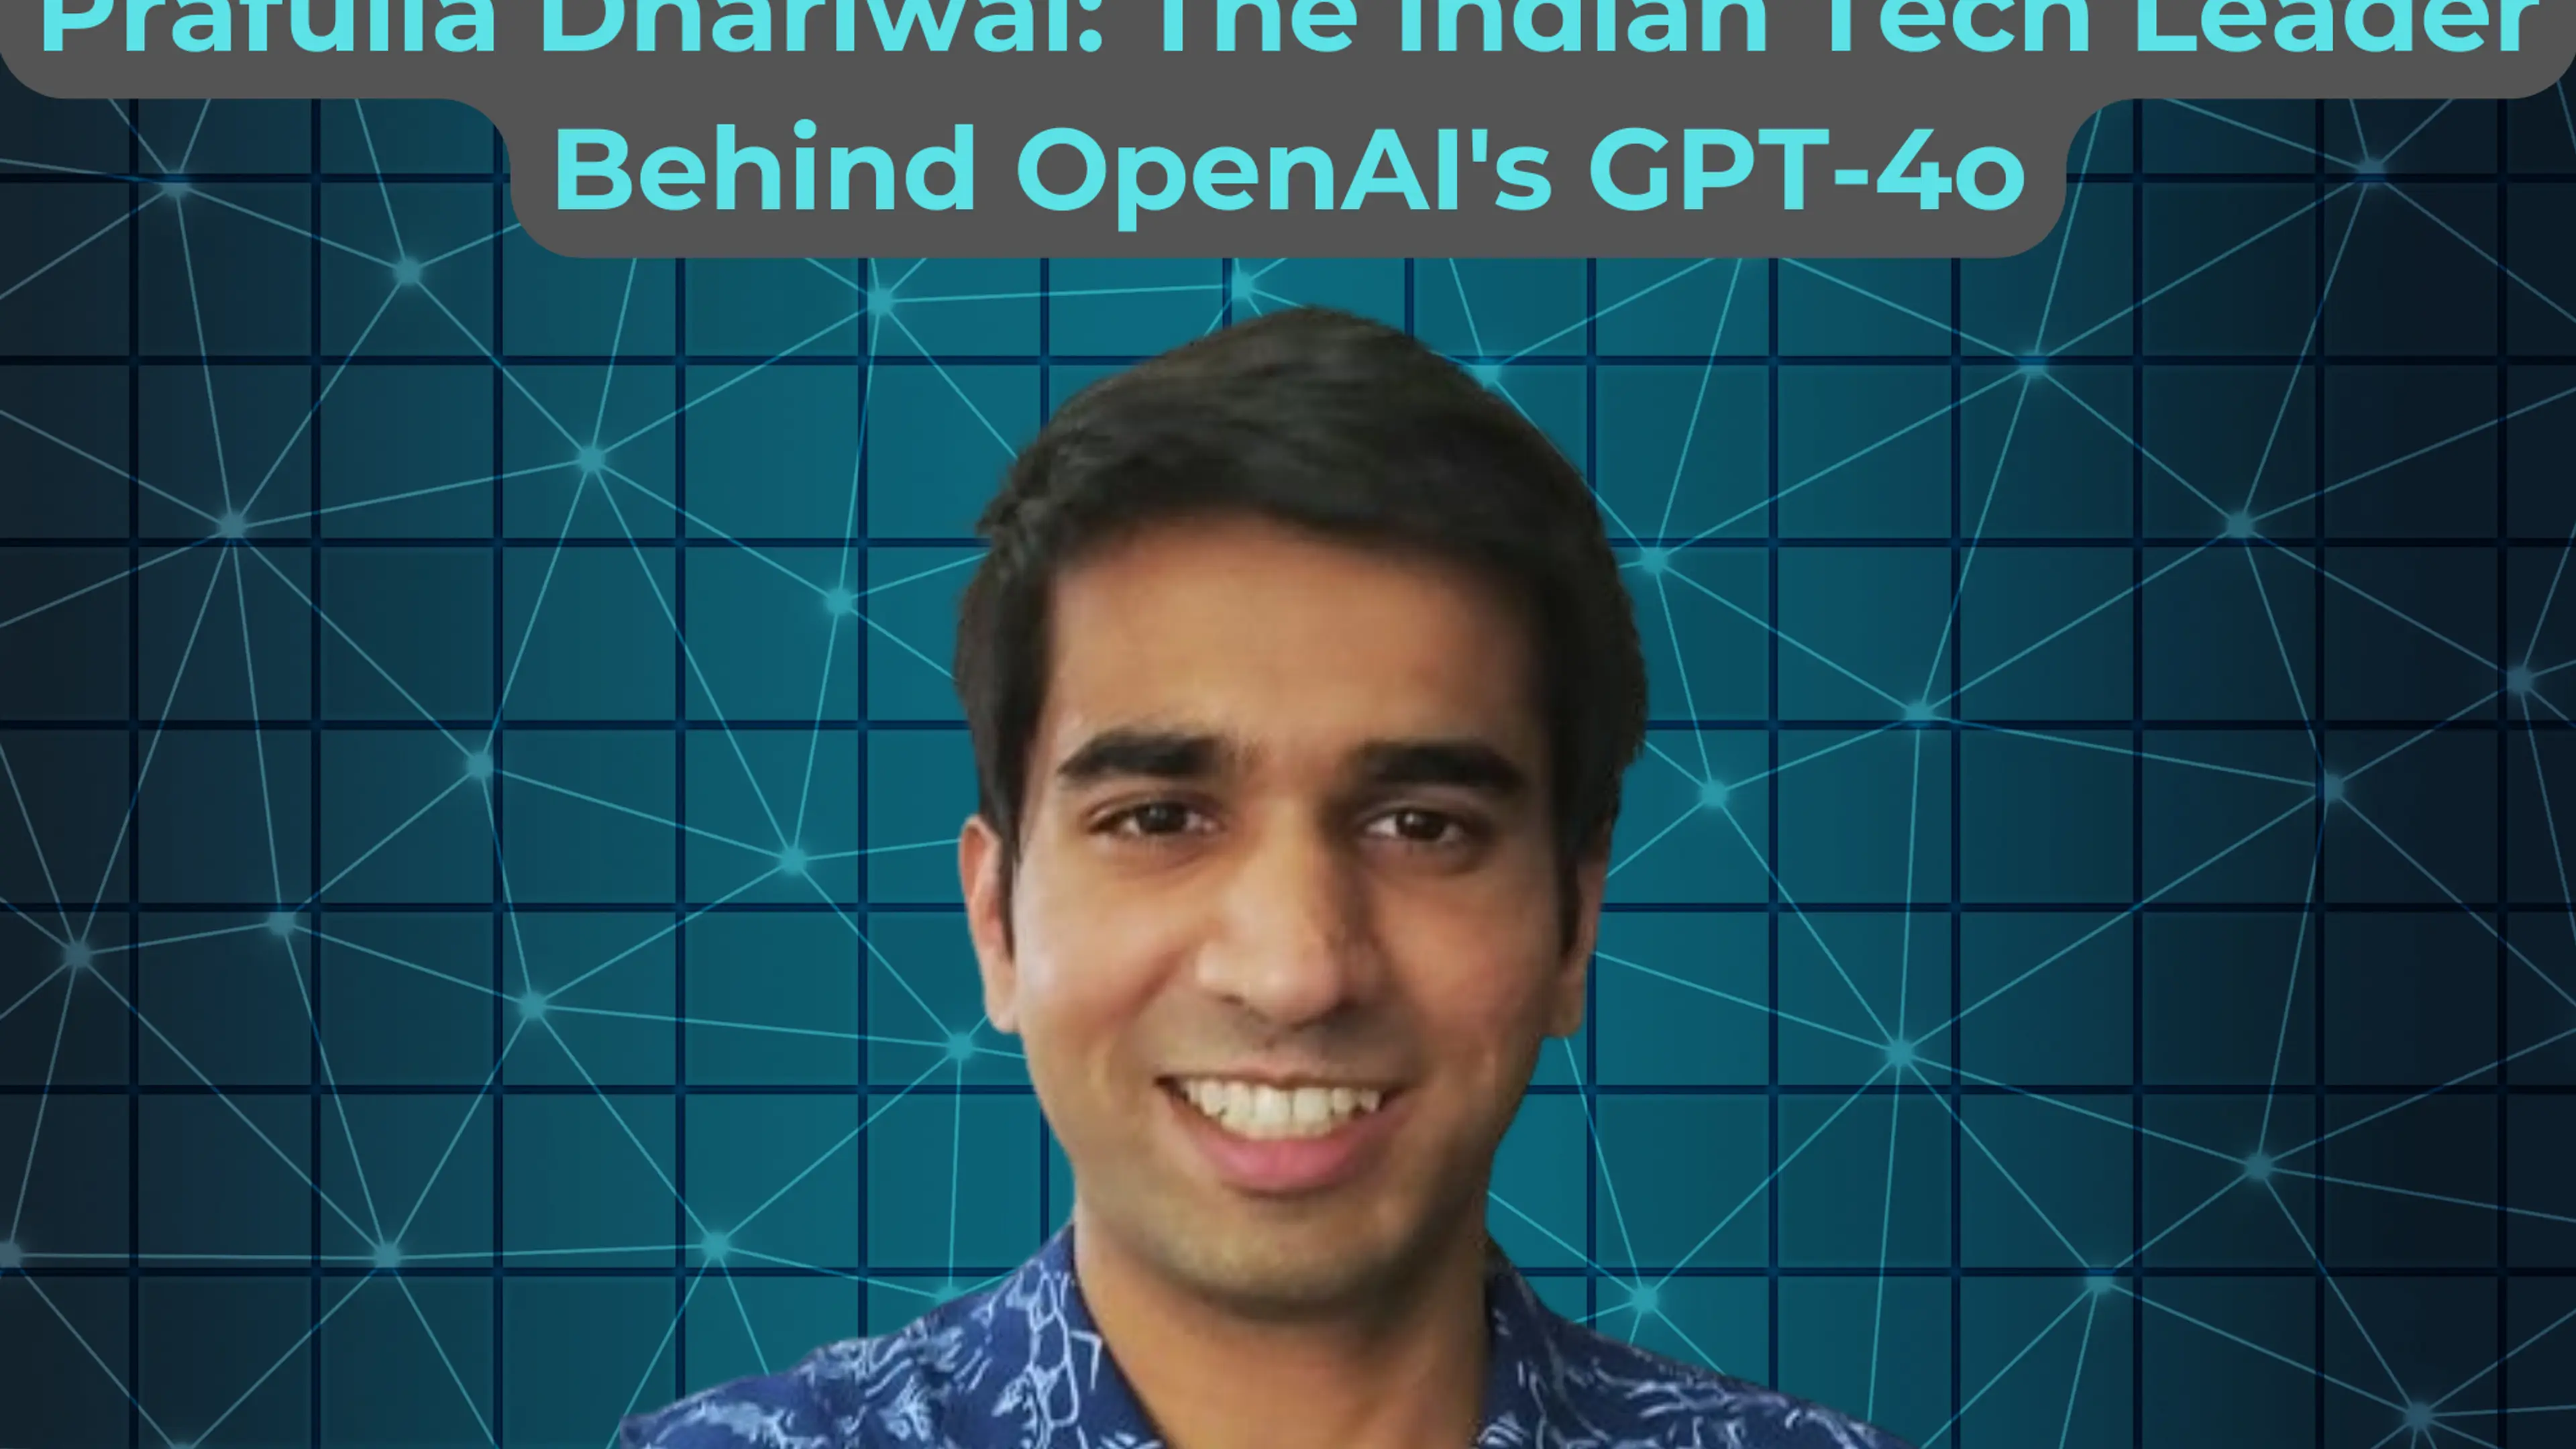 Prafulla Dhariwal: Indian tech leader behind OpenAI's GPT-4o